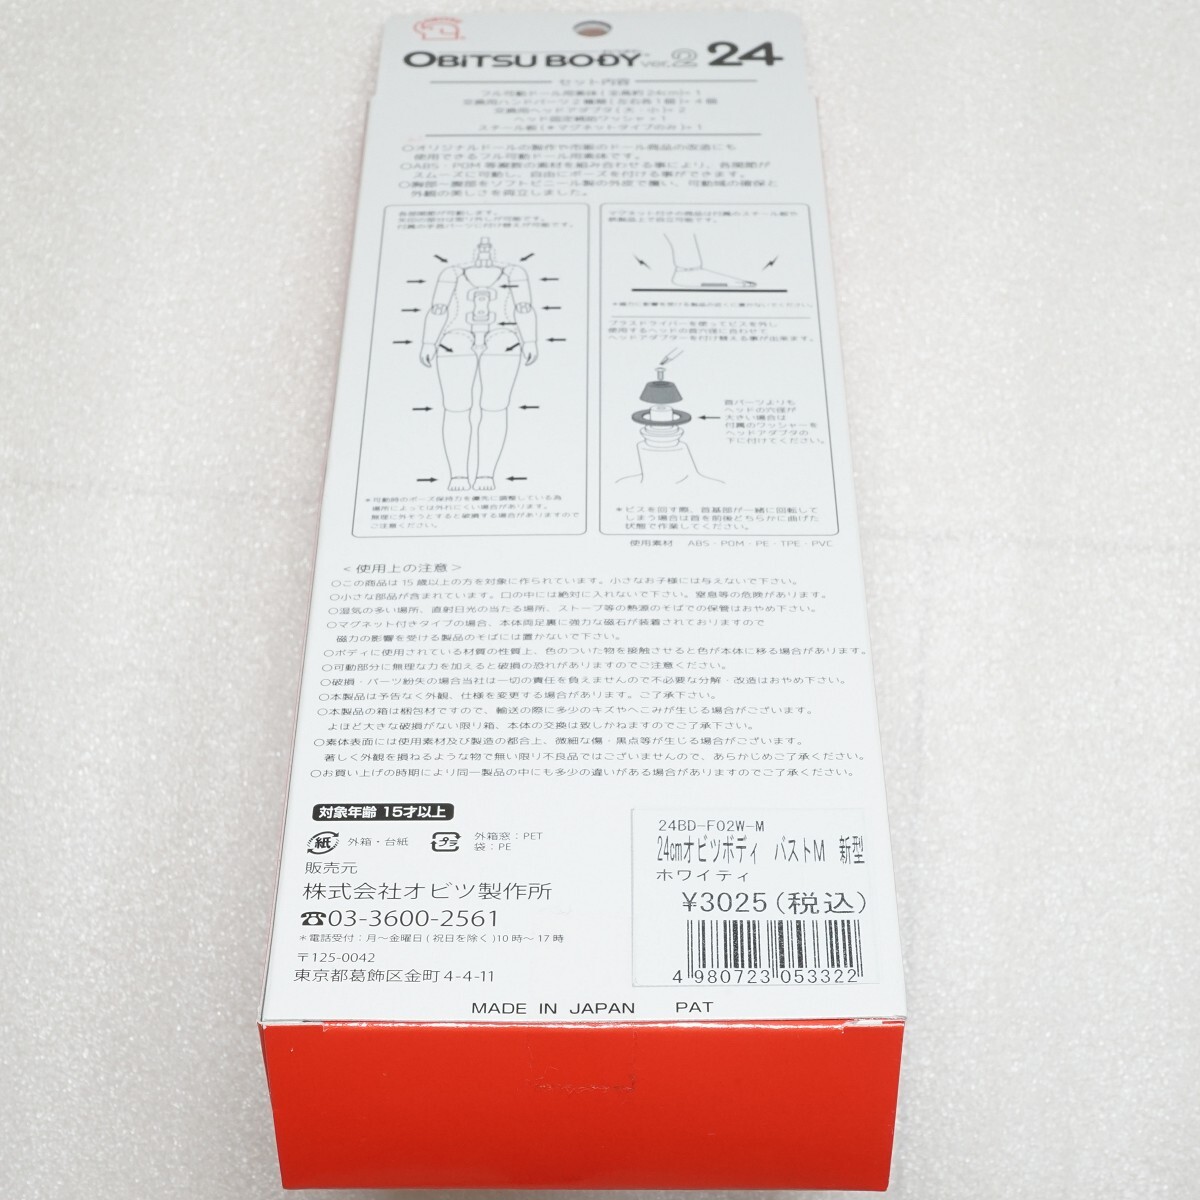 オビツ obitsu body 24cm オビツボディ Ver.2 ホワイティ マットスキンタイプ M胸 24BD-F02W-M 未使用品 1/6 ドール AZONE PARABOXの画像3